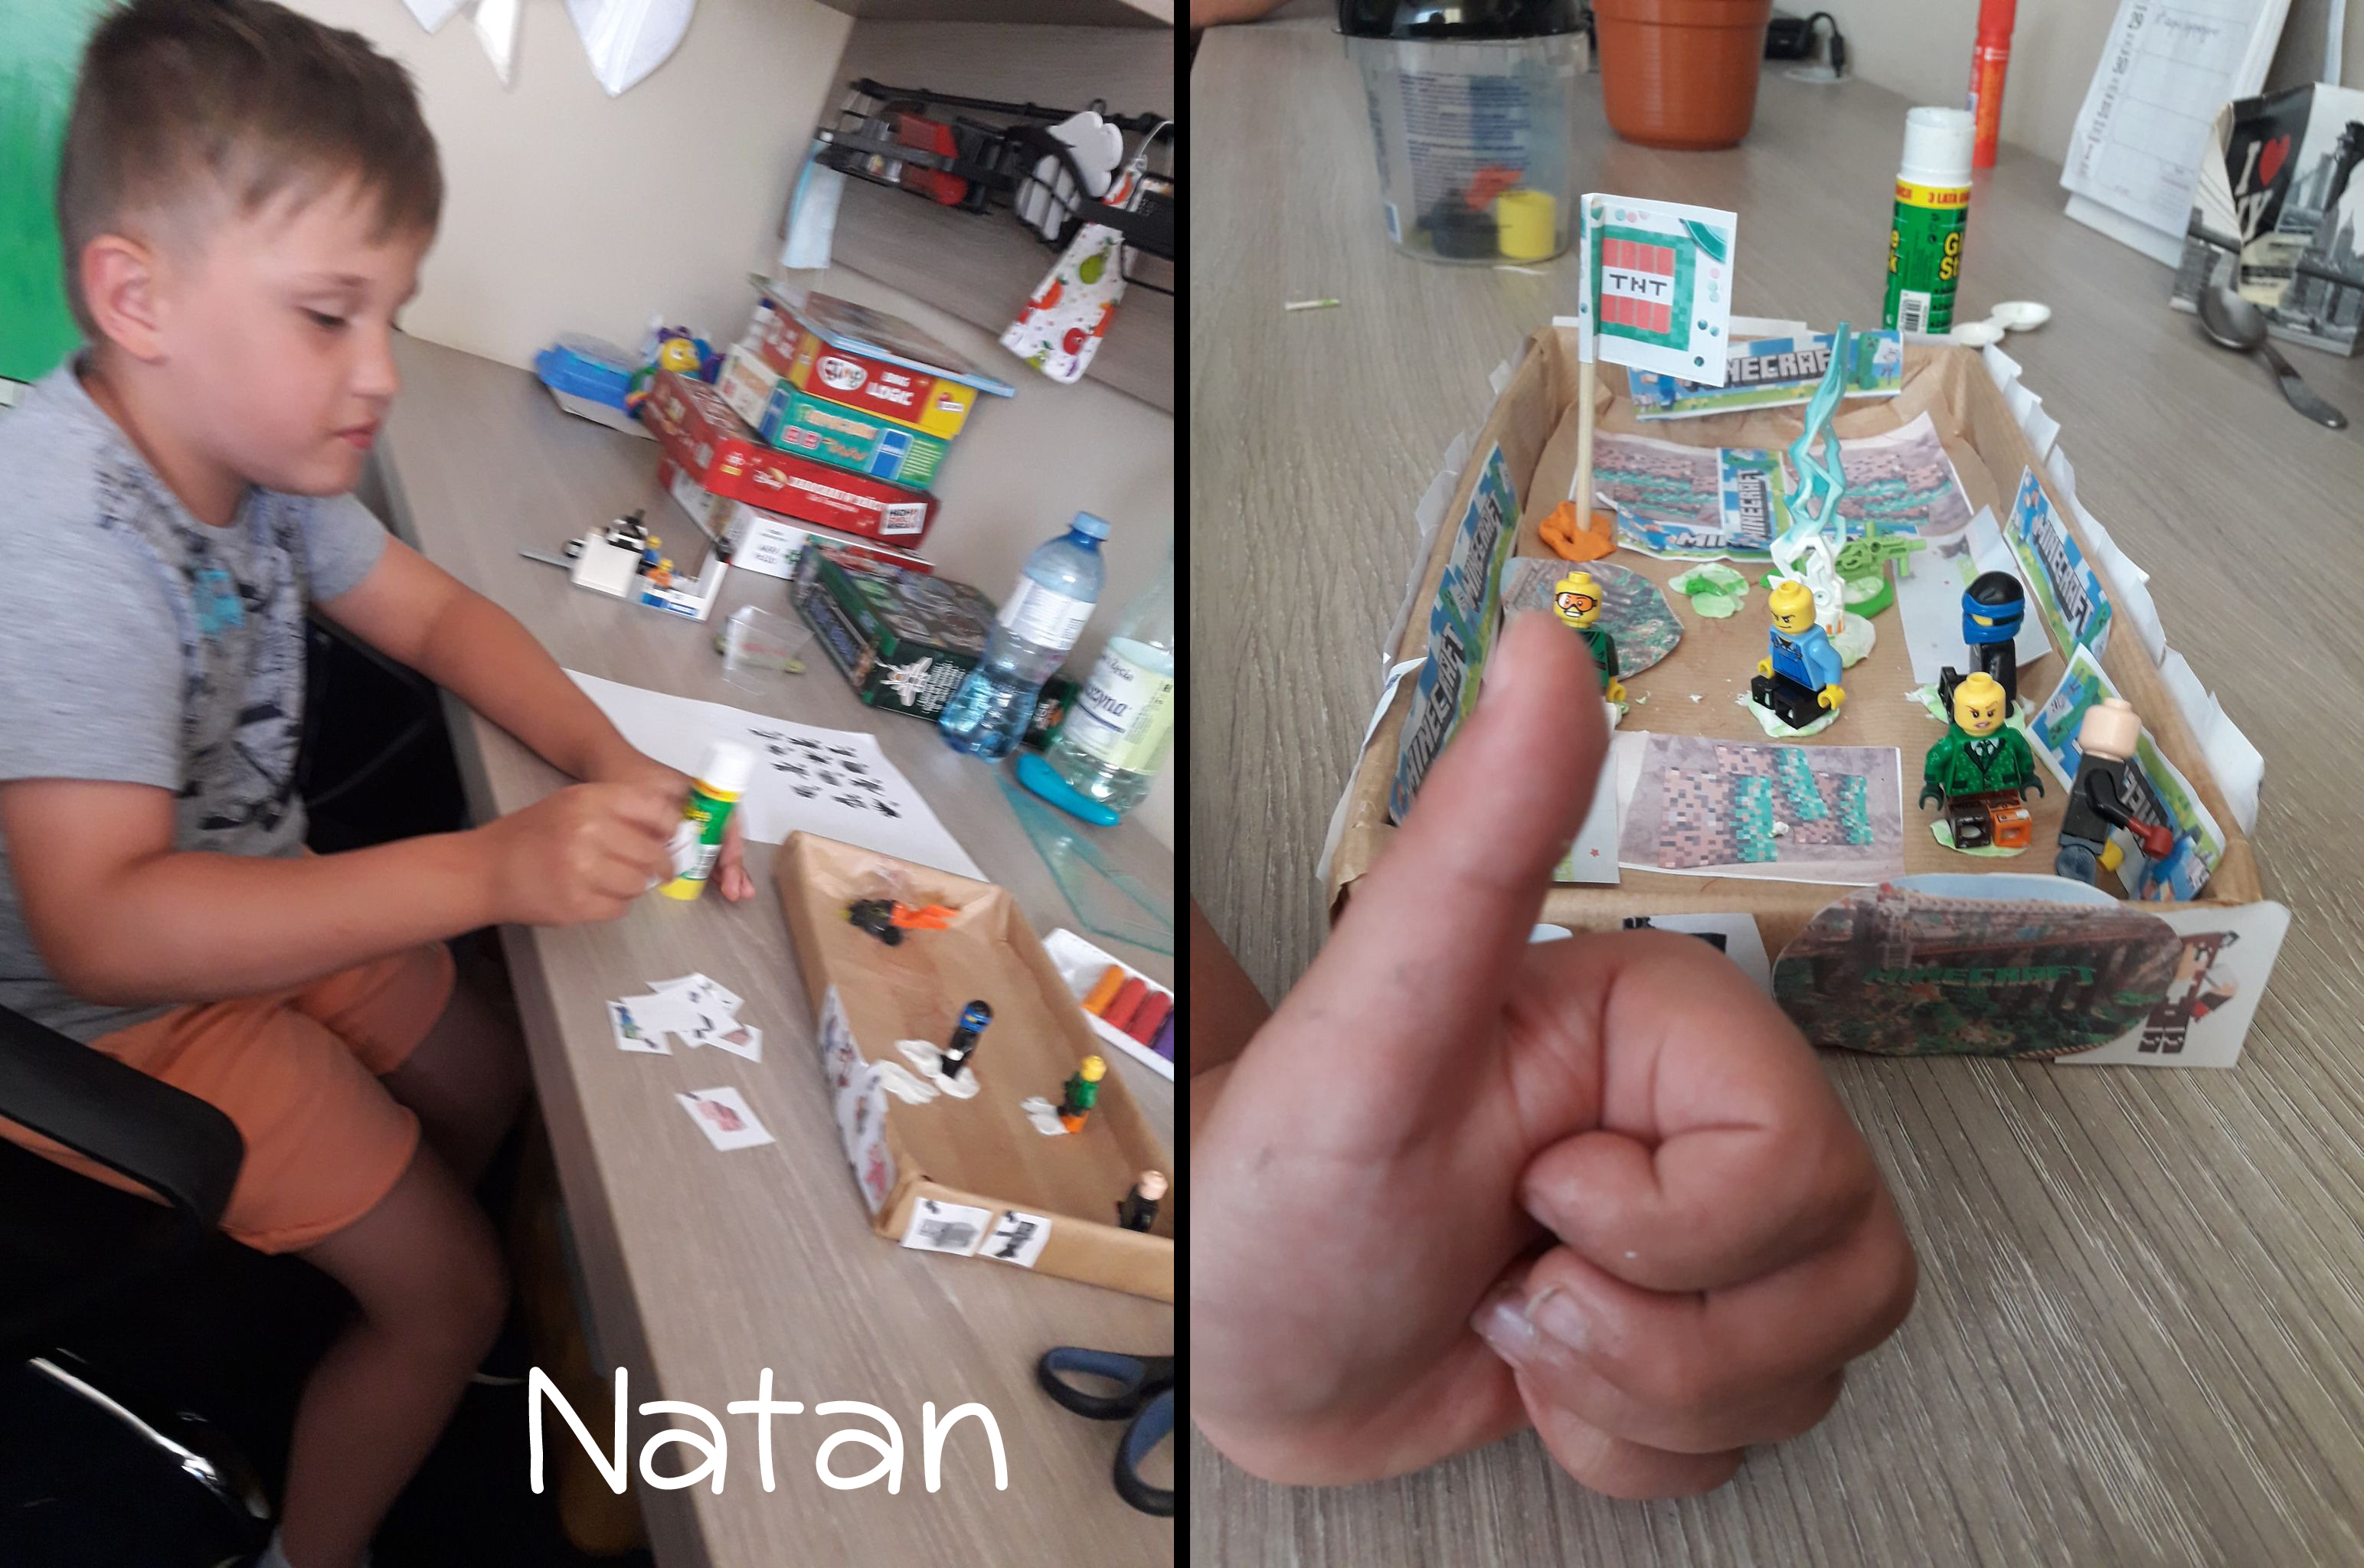 Natan siedzi przy stole z przyborami plastycznymi, skleja elementy pudełk